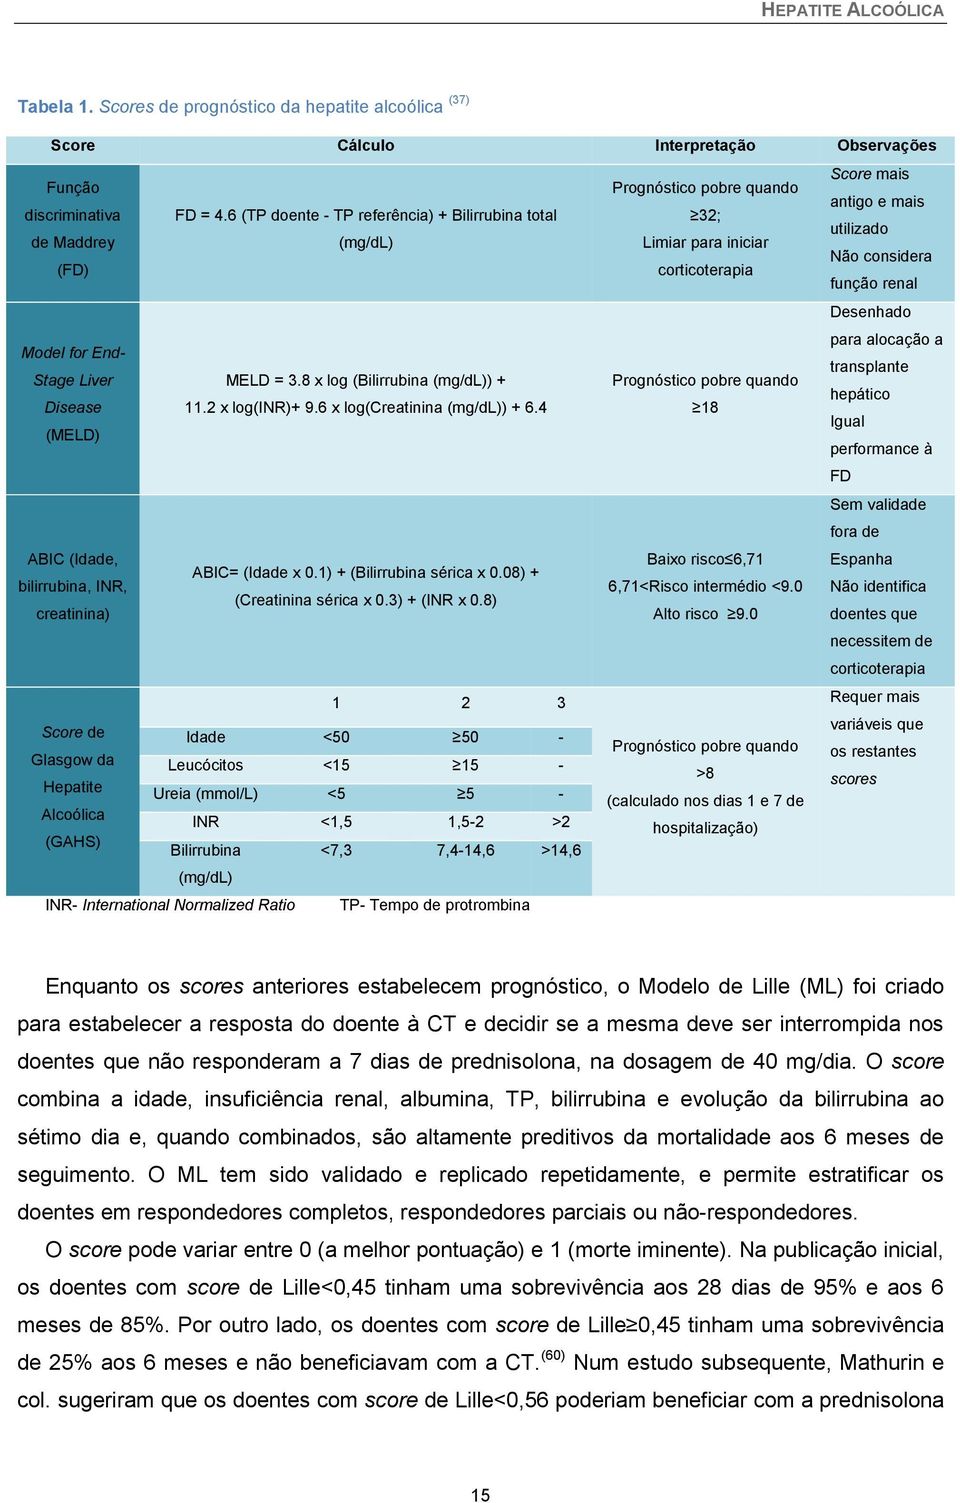 Endtransplante Stage Liver MELD = 3.8 x log (Bilirrubina (mg/dl)) + Prognóstico pobre quando hepático Disease 11.2 x log(inr)+ 9.6 x log(creatinina (mg/dl)) + 6.